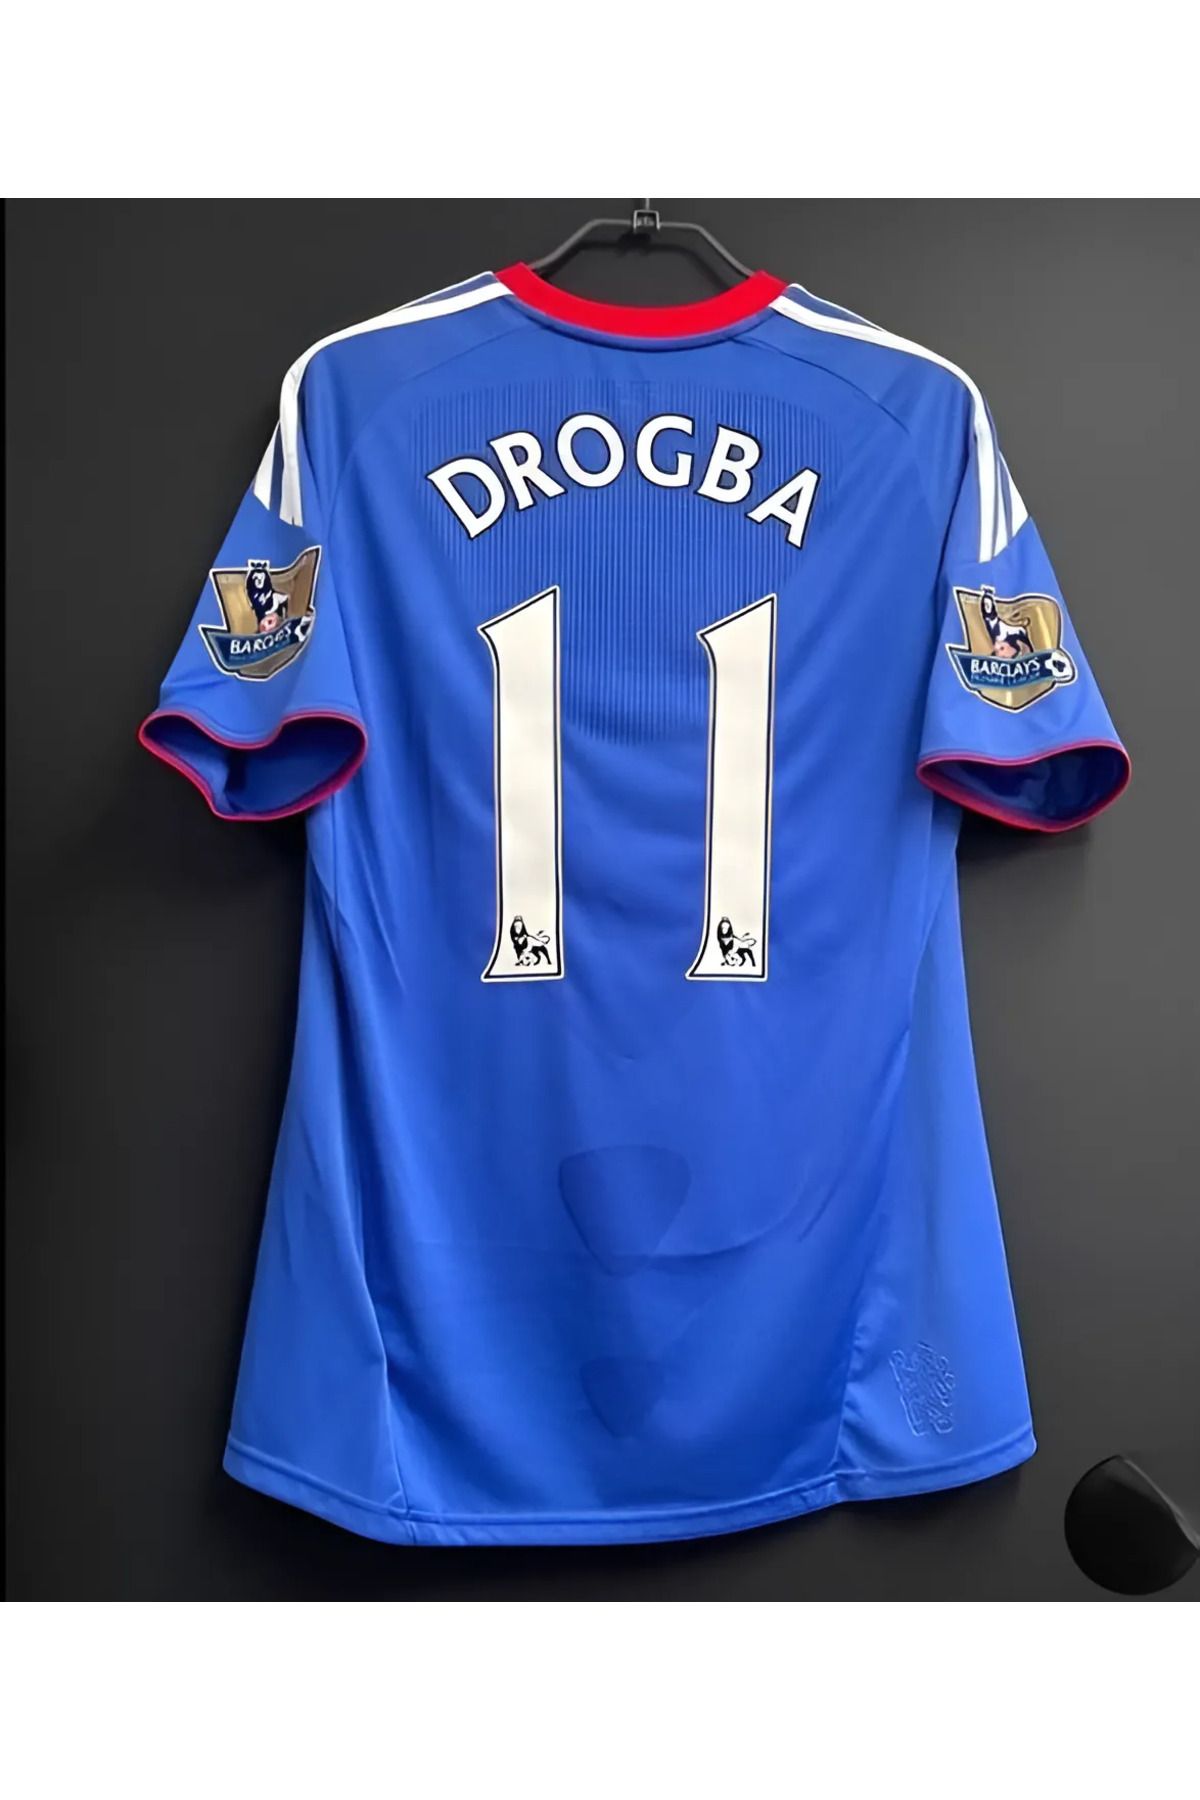 Rang store Drogba Chelsea 2010/2011 Sezon Futbol Formasi